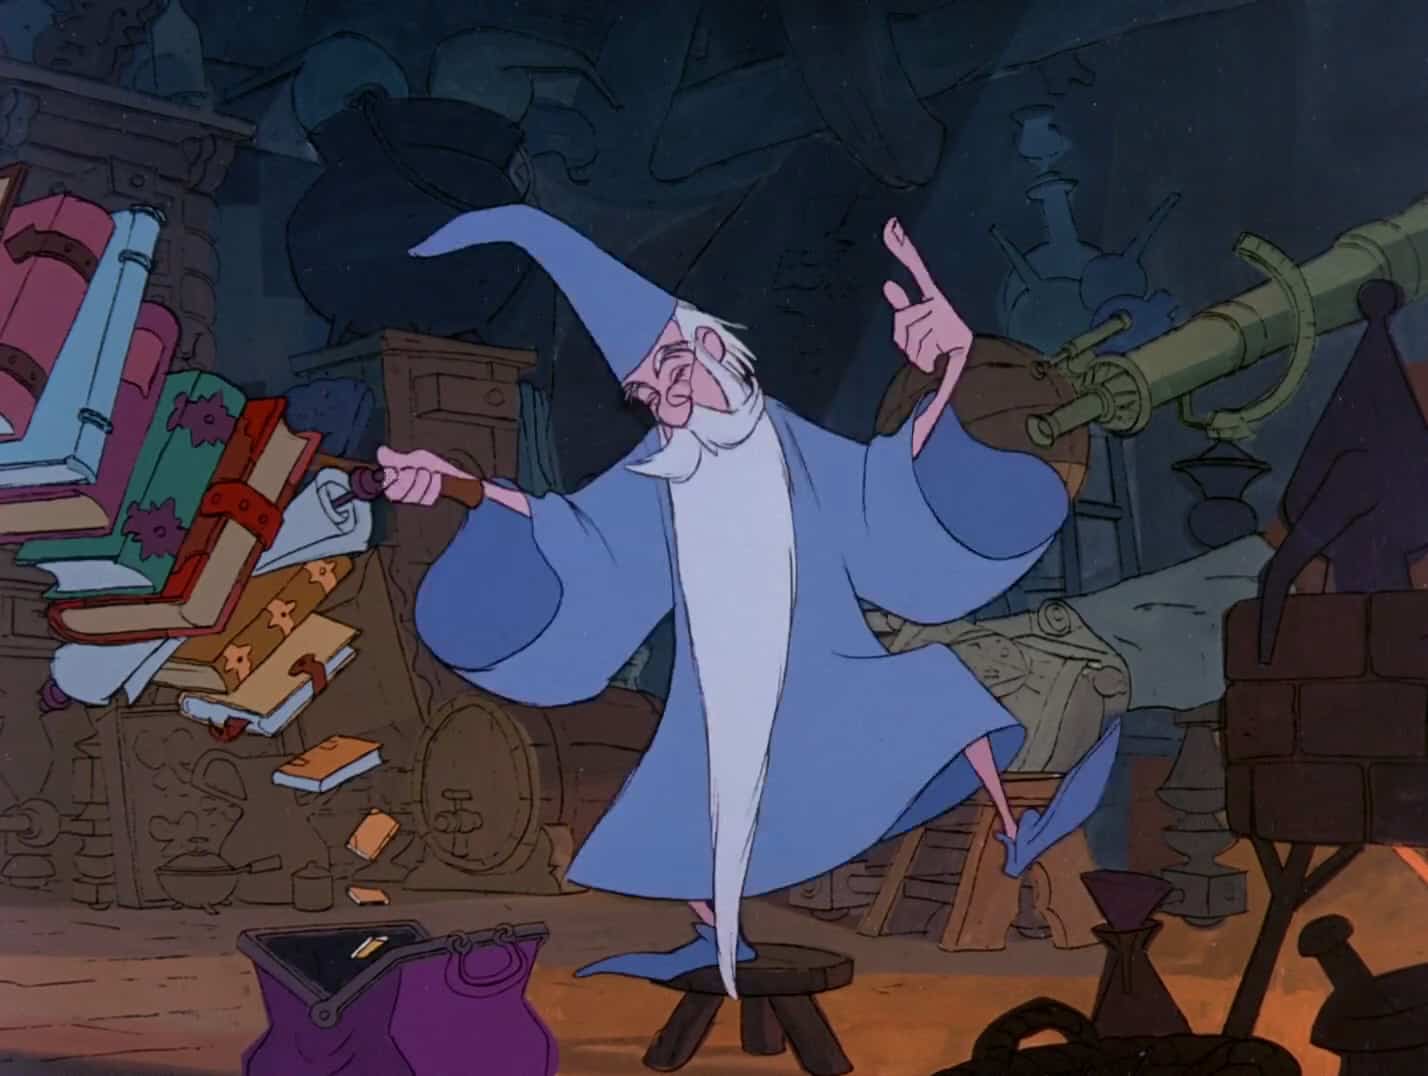 Personaggi iconici: Mago Merlino uno dei protagonisti de La spada nella roccia